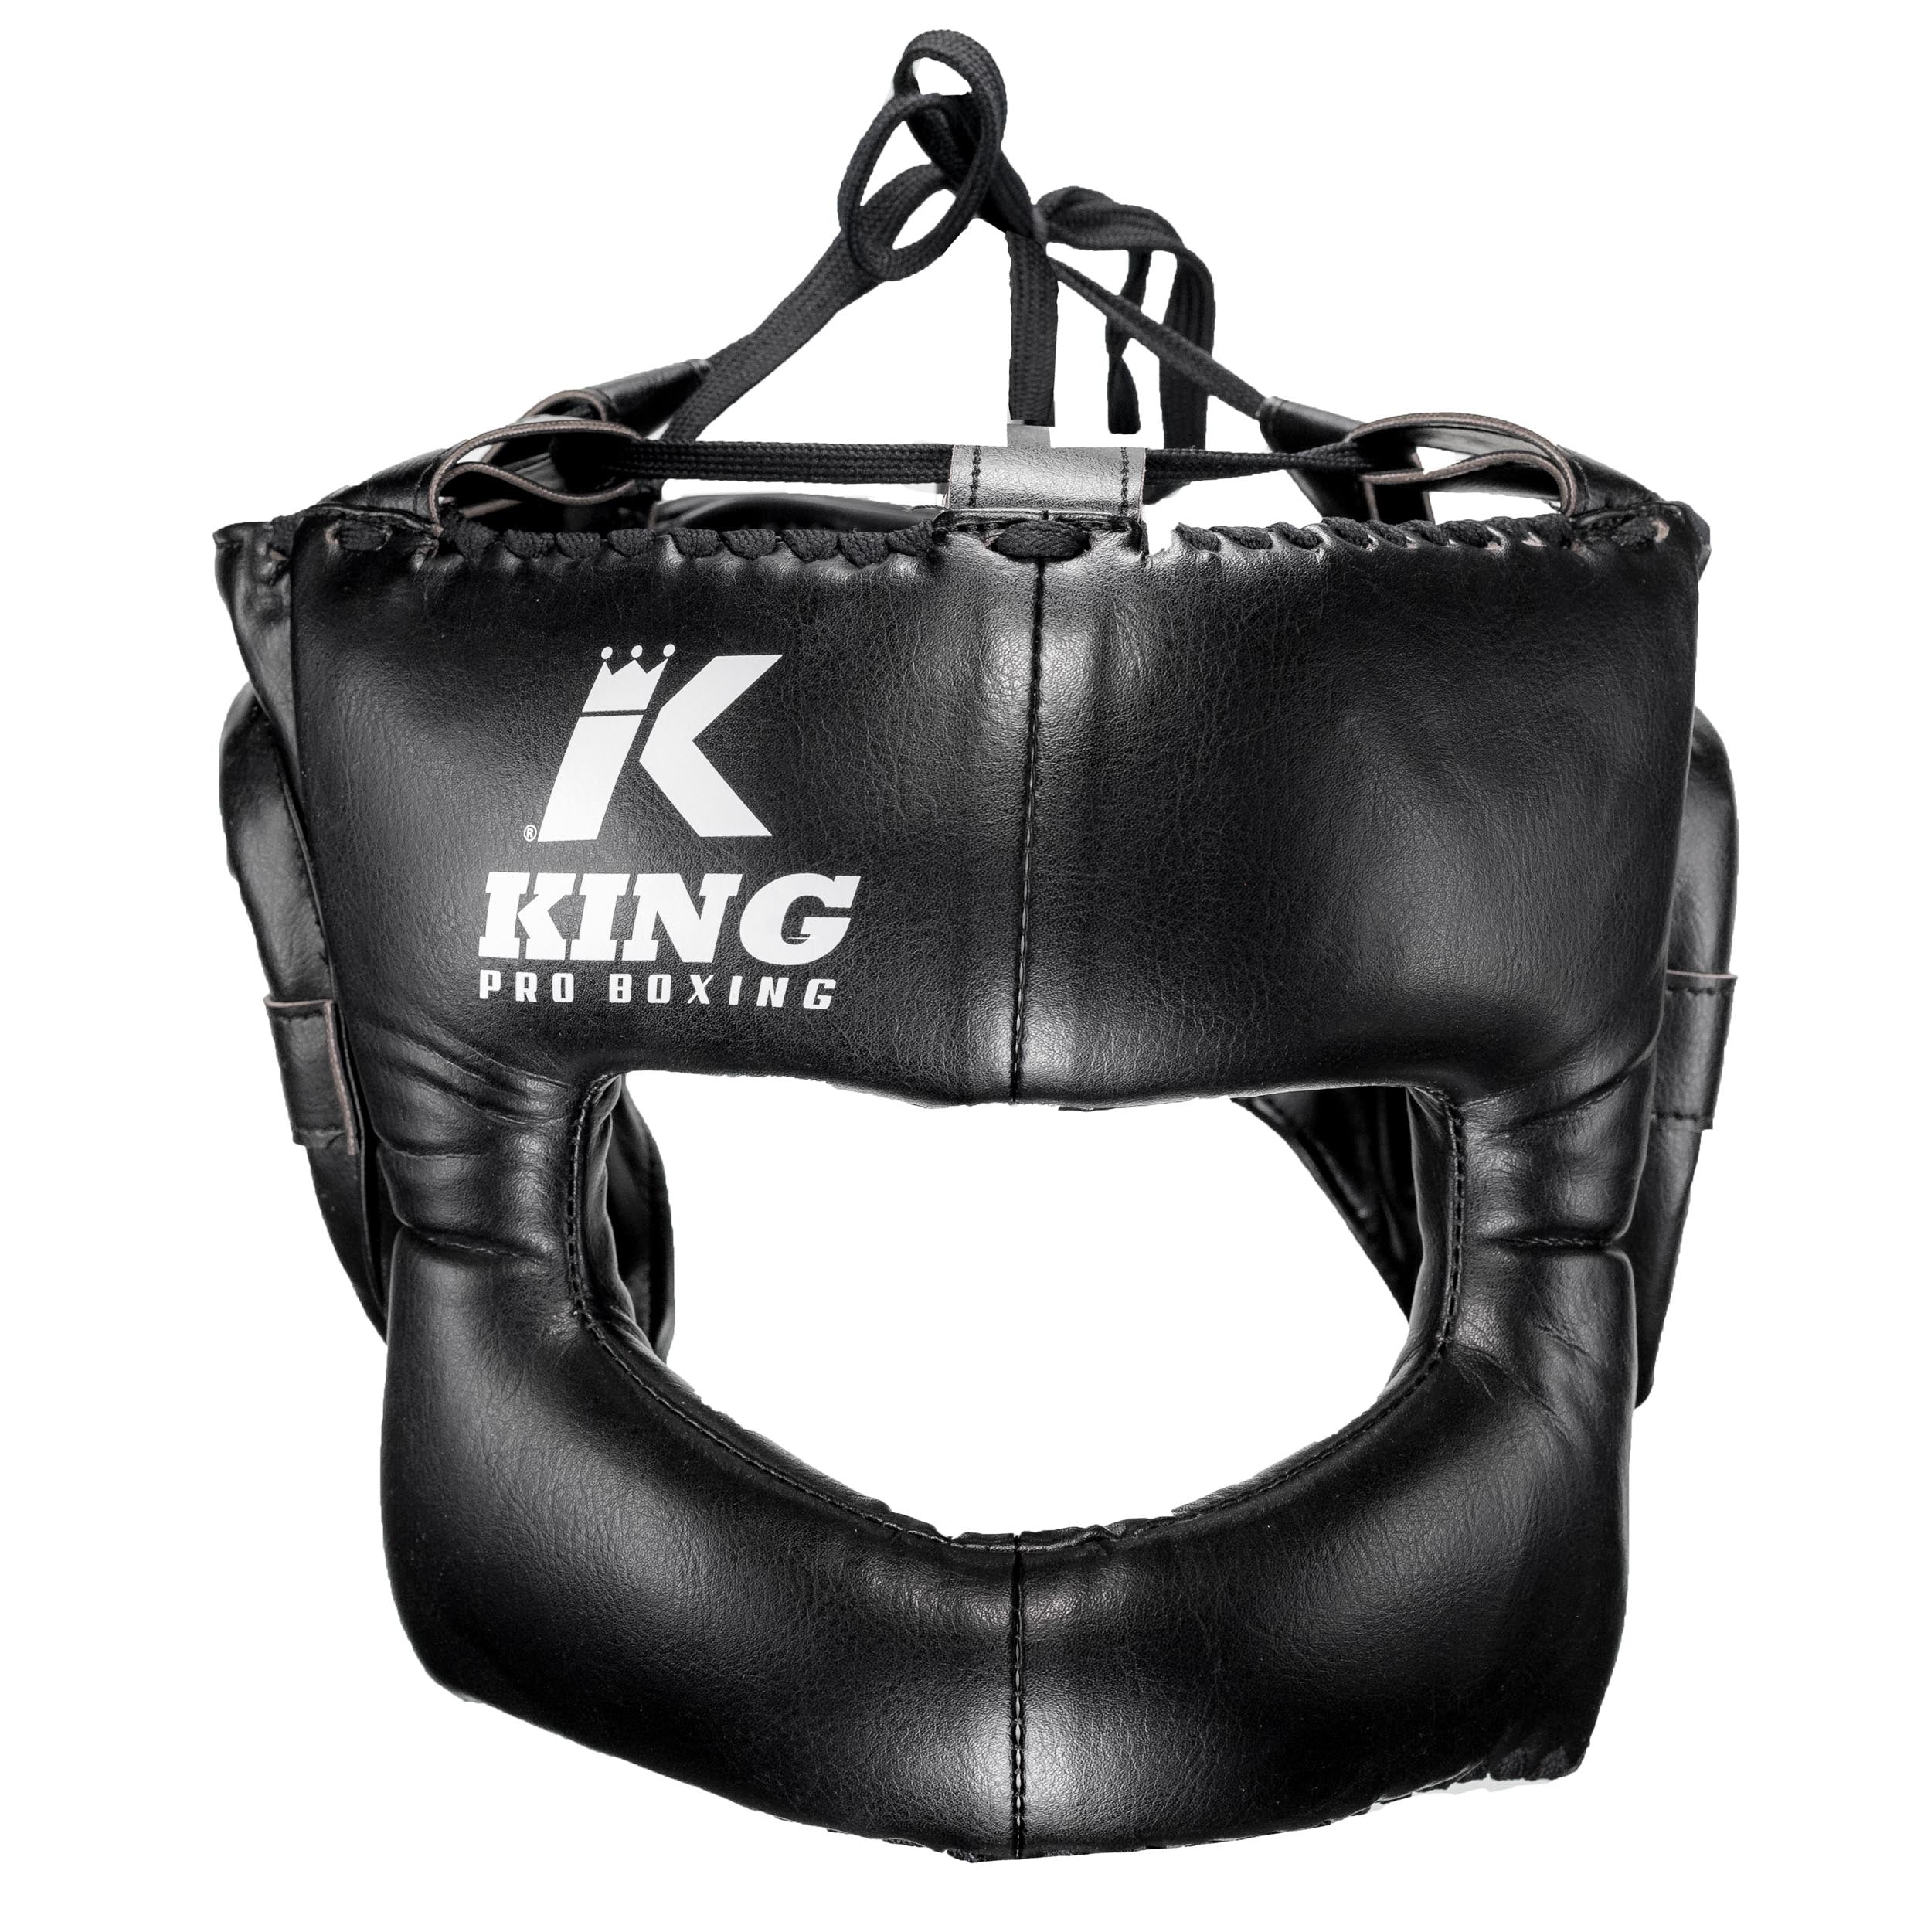 King PRO boxing headguard - HG PRO BOX